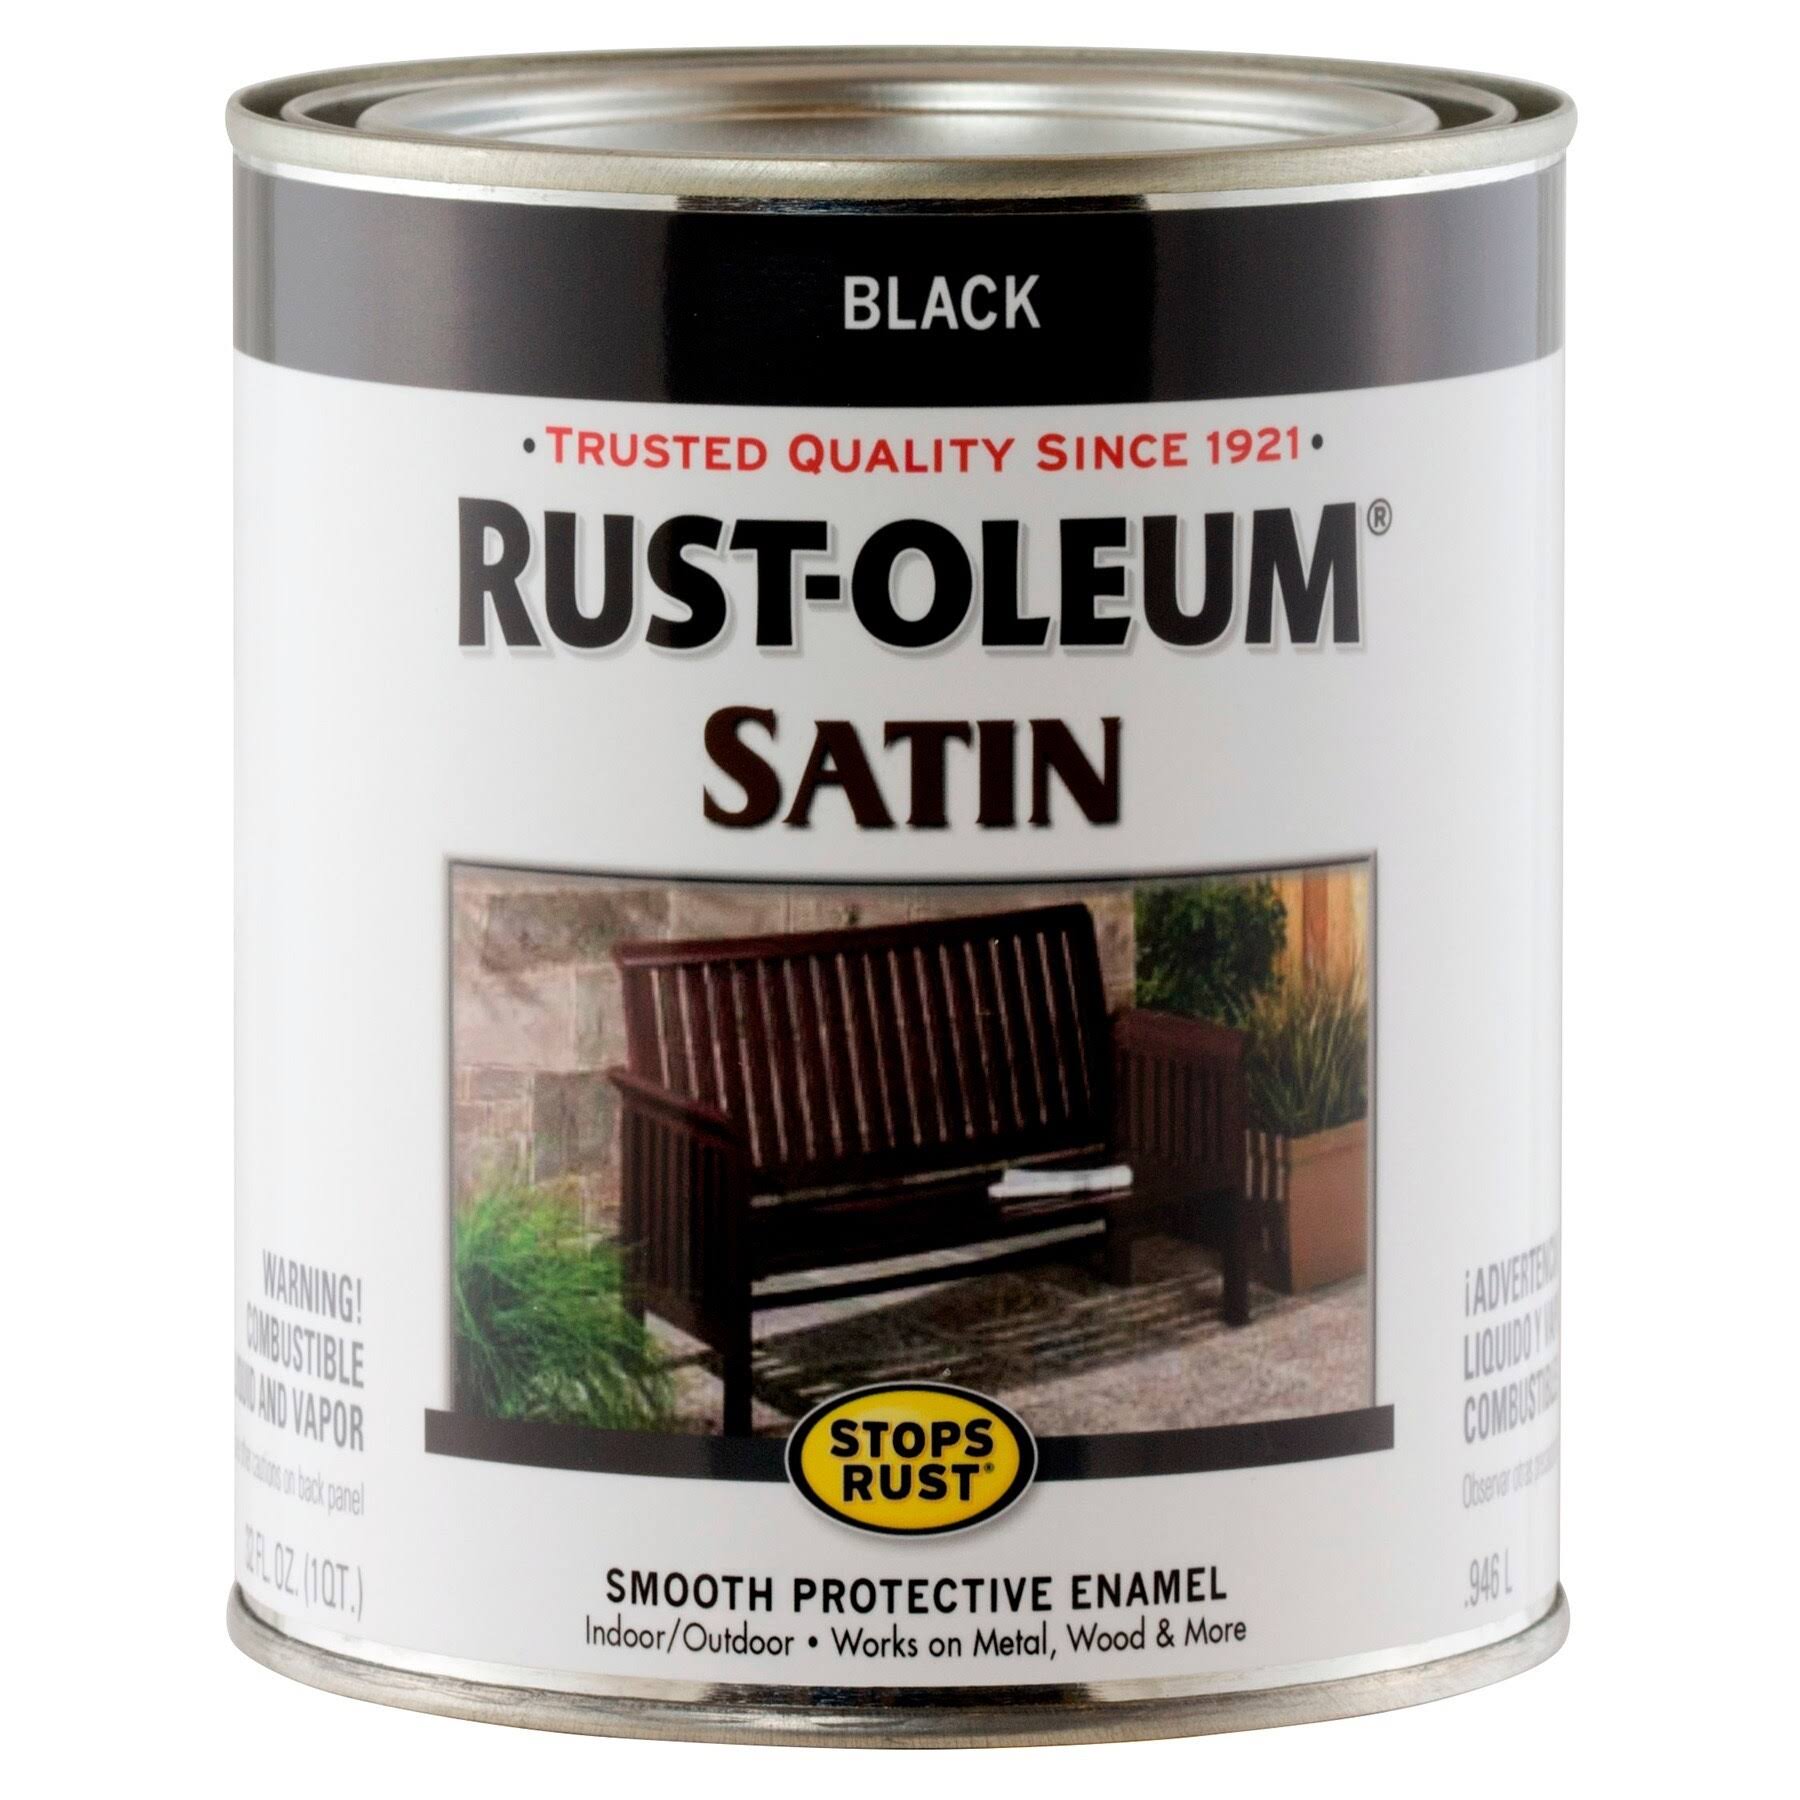 Rust-Oleum Satin Paint - Black, 1 Quart